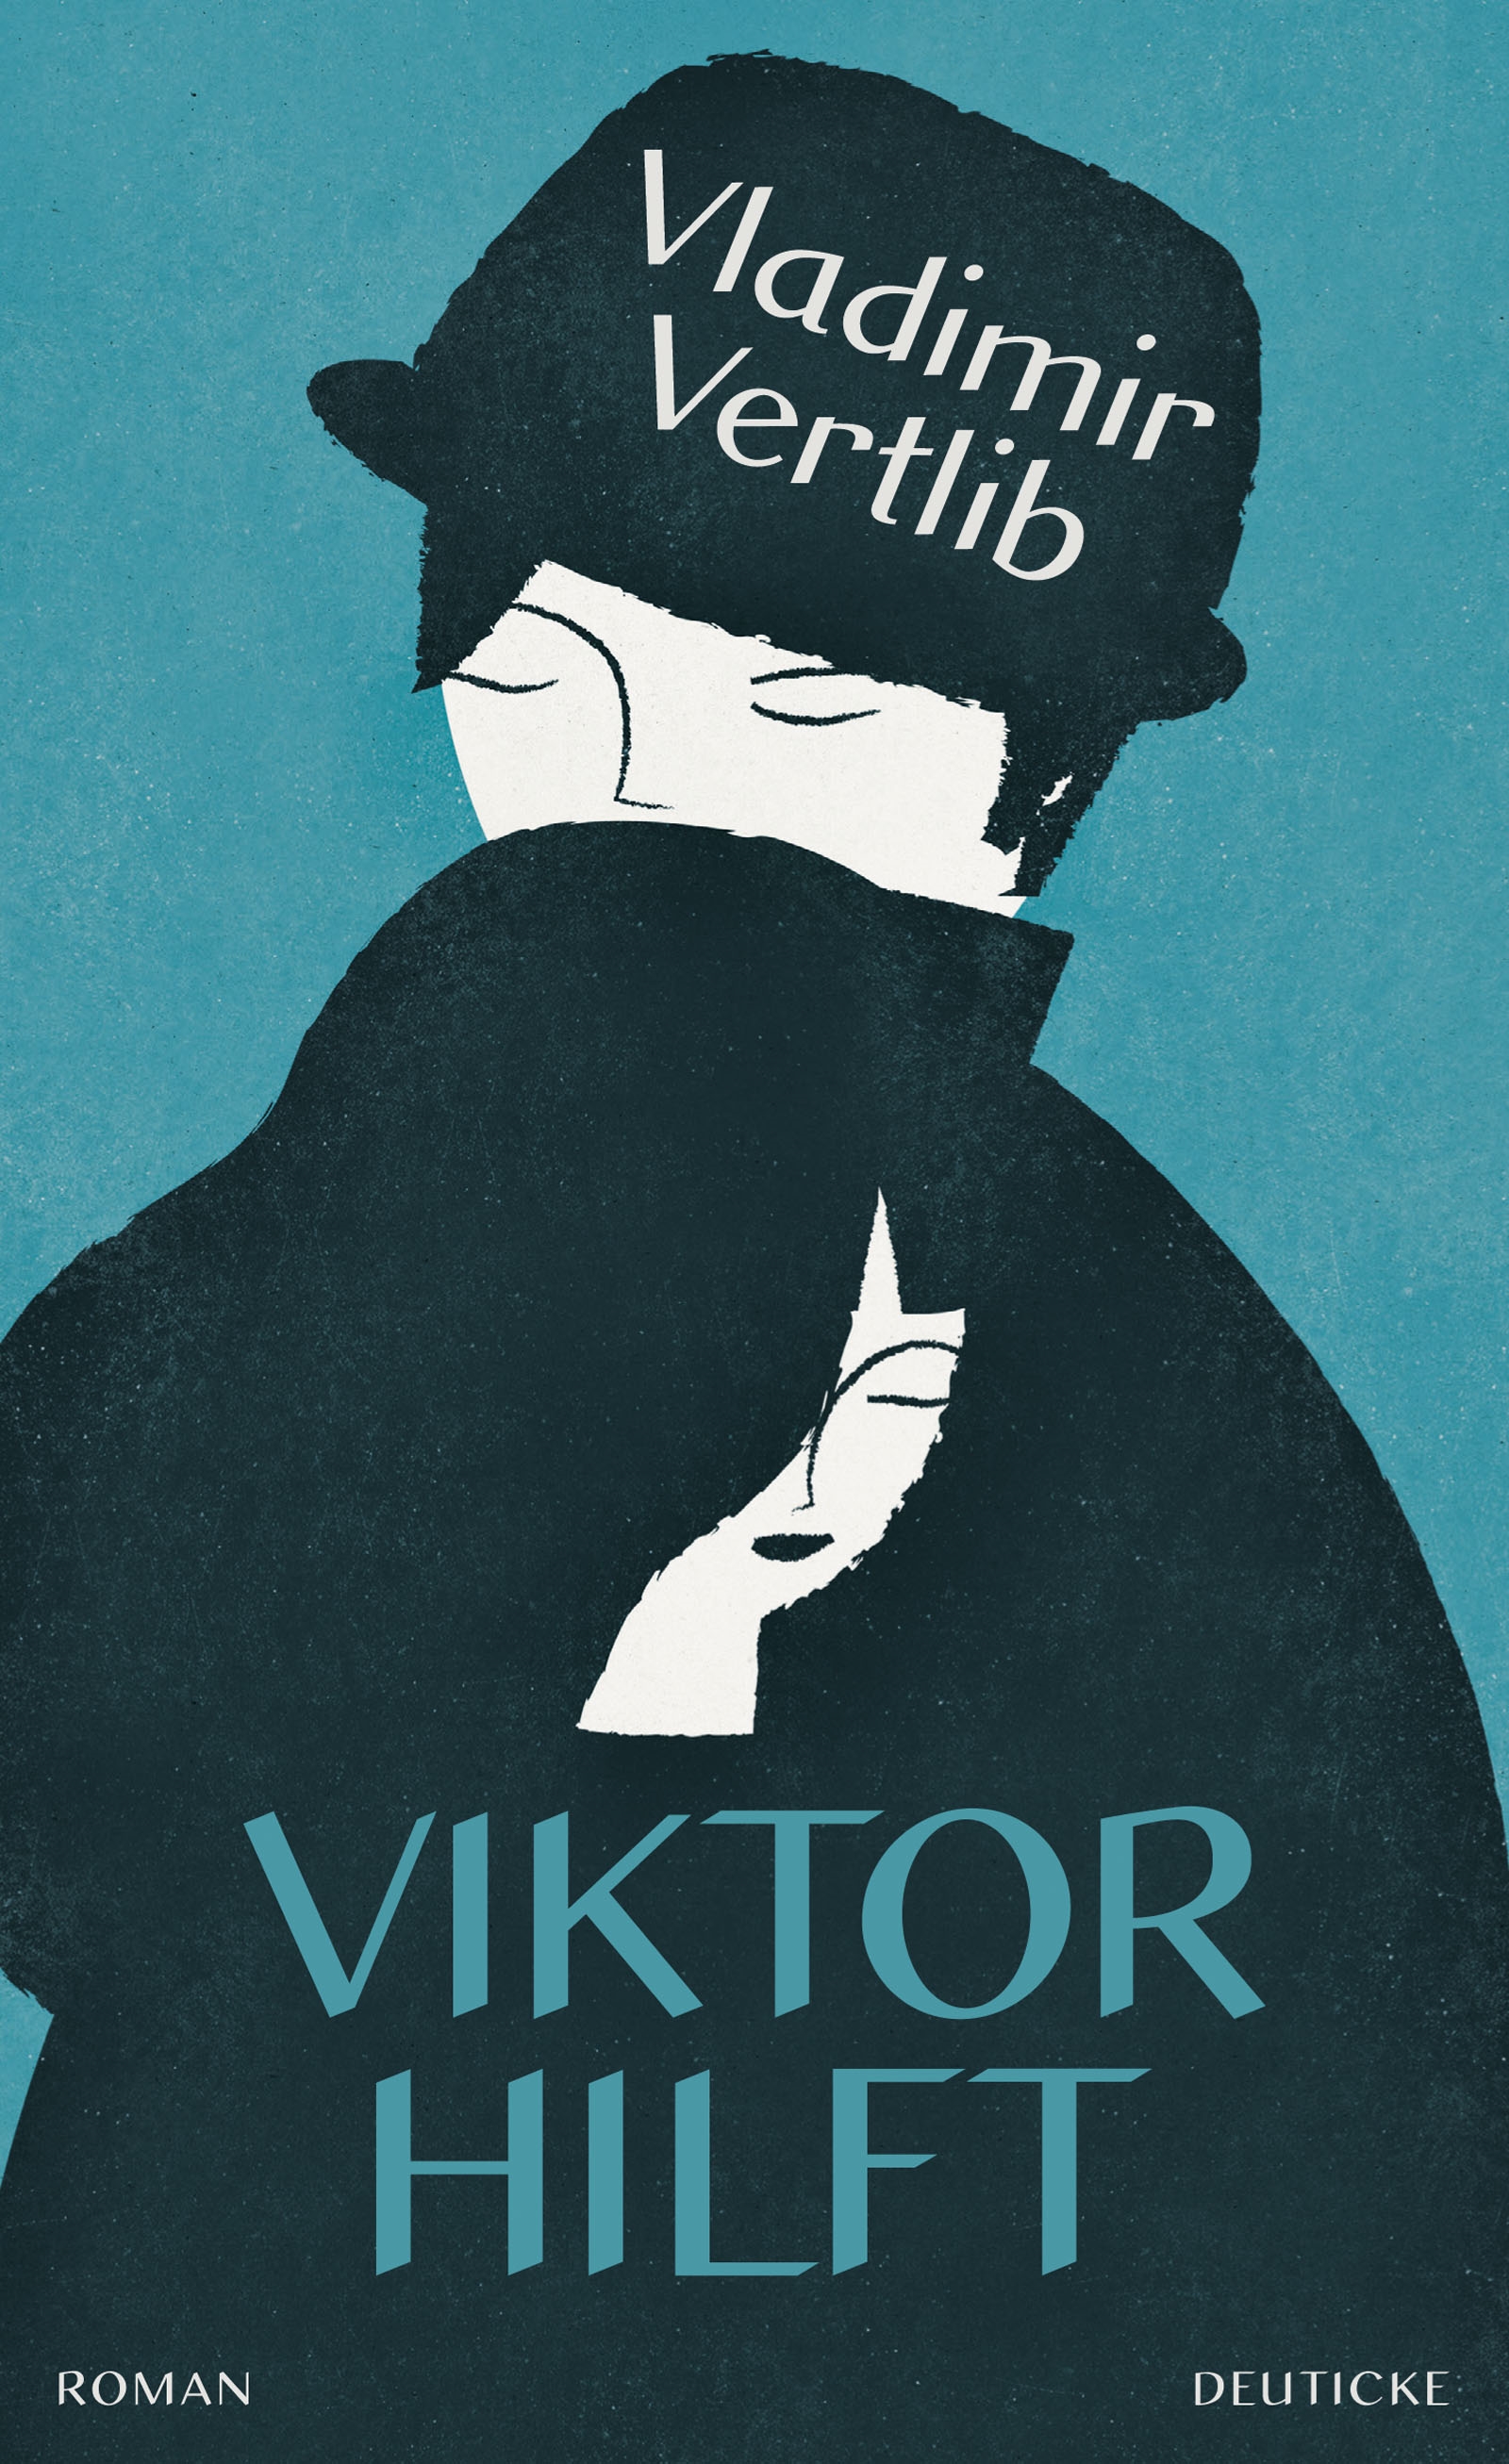 Viktor hilft